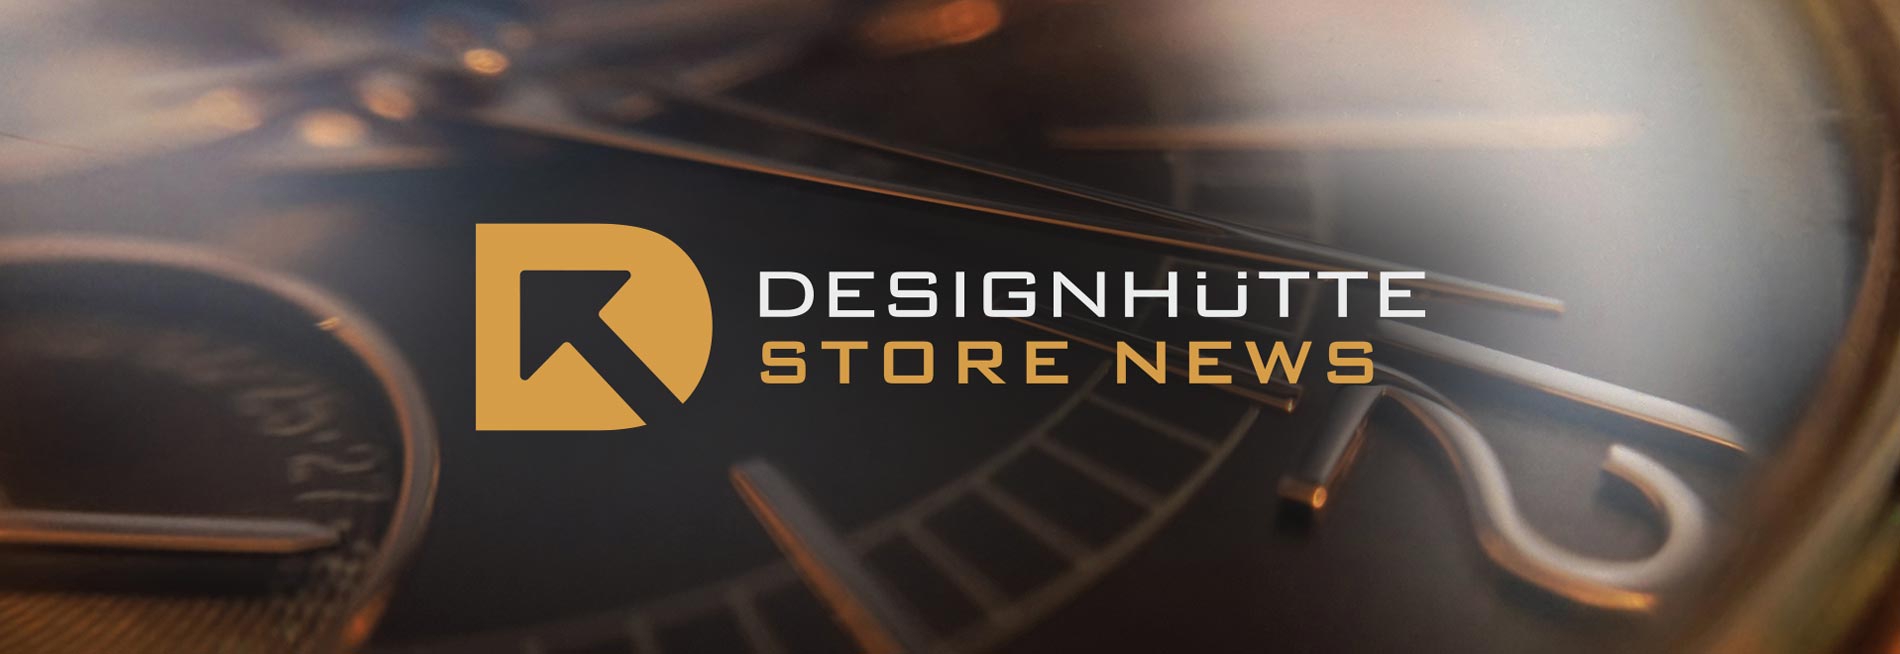 Designhütte Store News